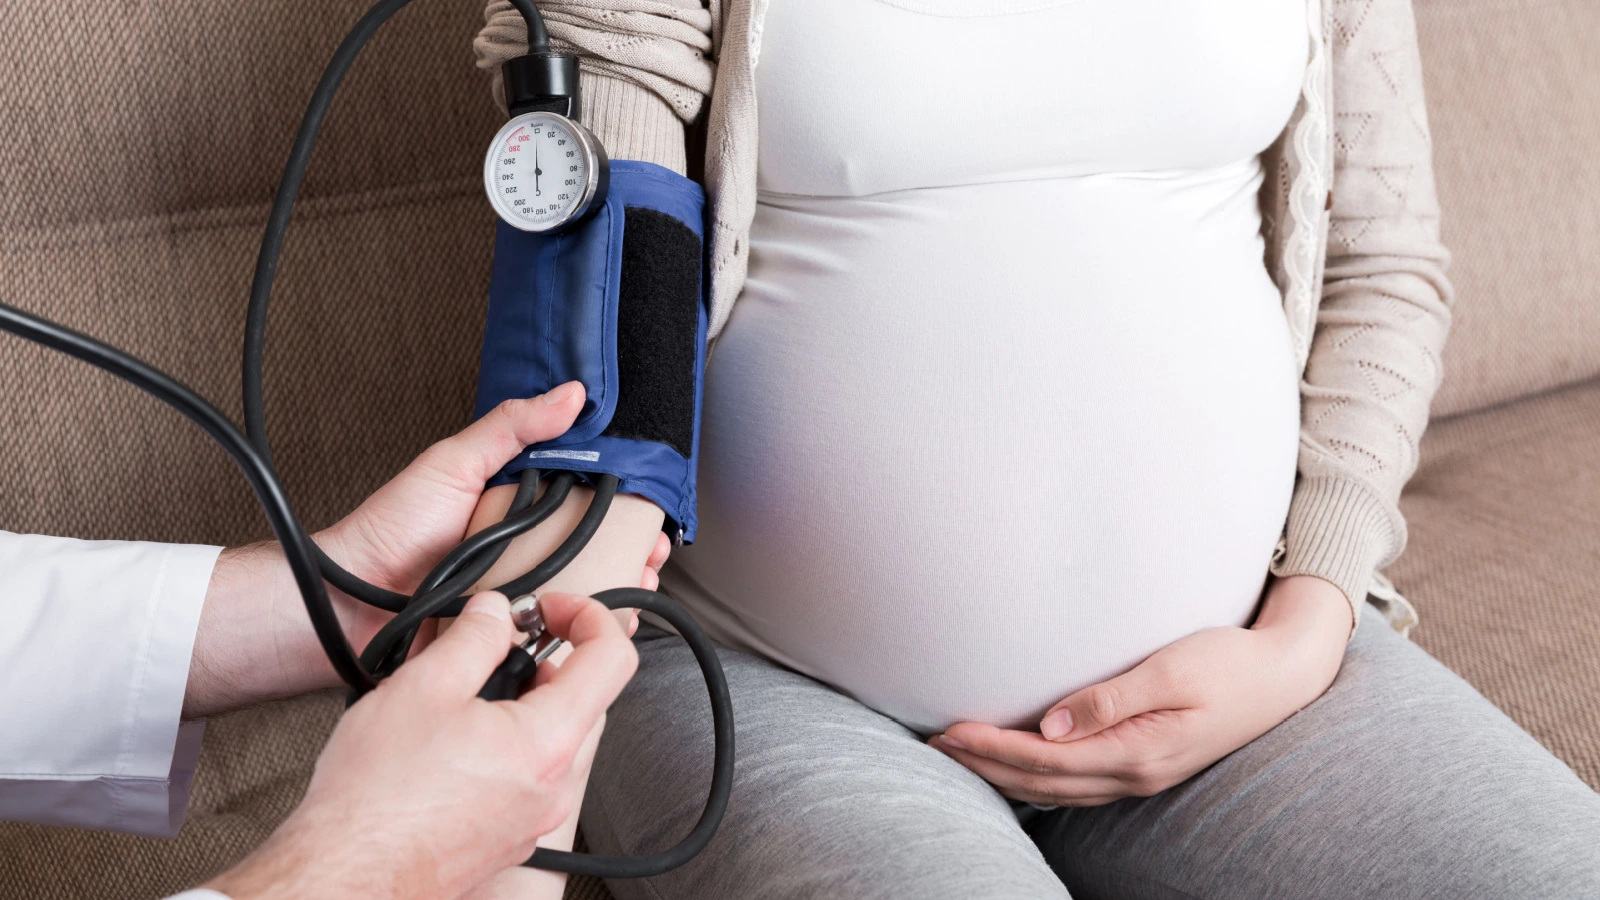 ما هو ضغط الحامل الطبيعي وما علاقة ارتفاع الضغط بتسمم الحمل؟